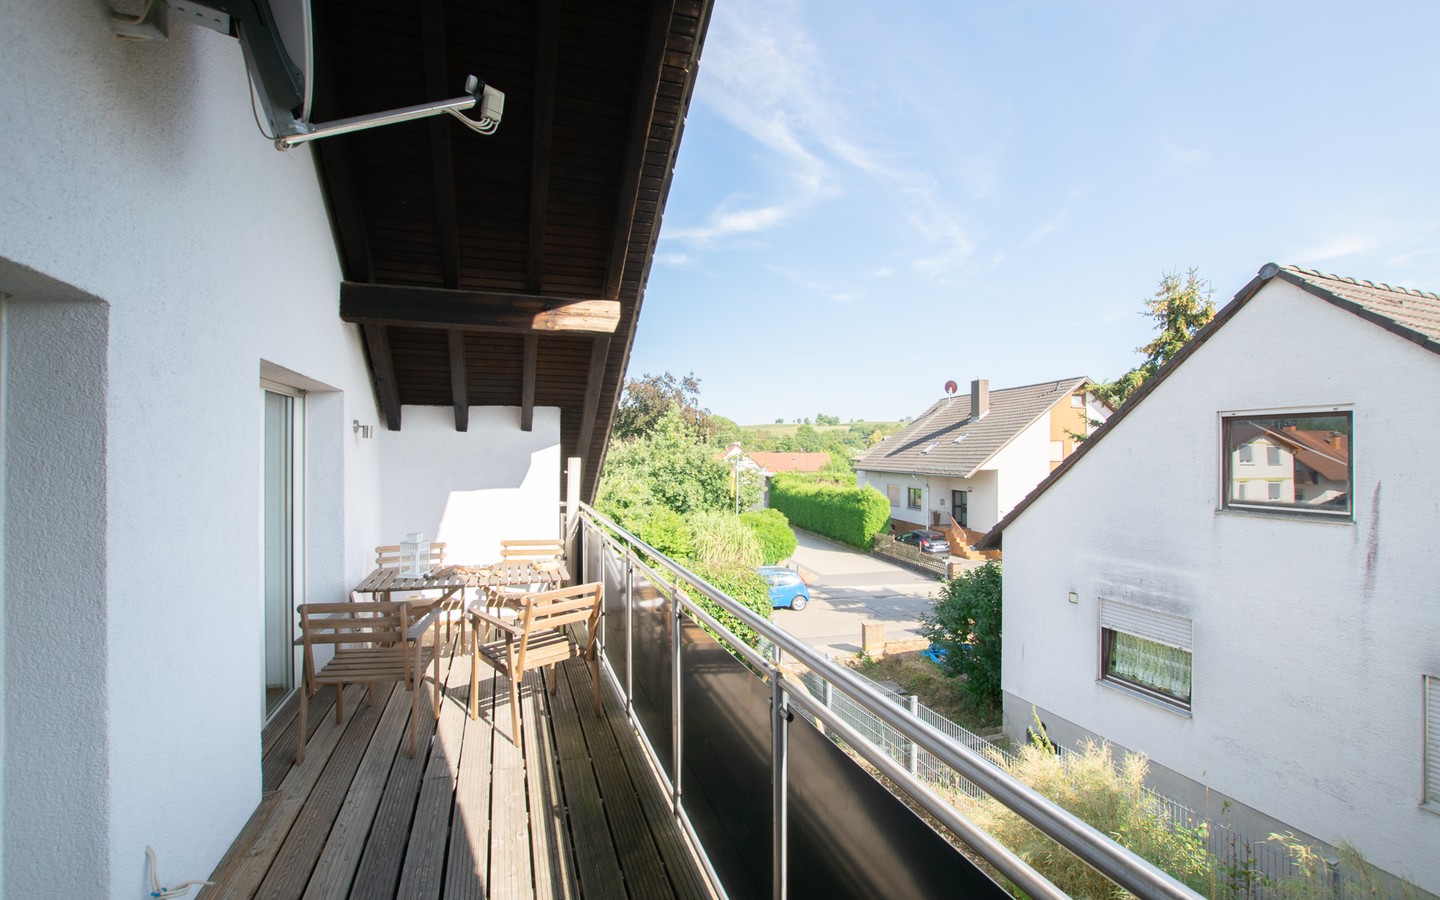 Balkon OG - Modernes Einfamilienhaus auf großem Grundstück in ruhiger Lage von Lobenfeld +Virtuelle 3D-Tour+